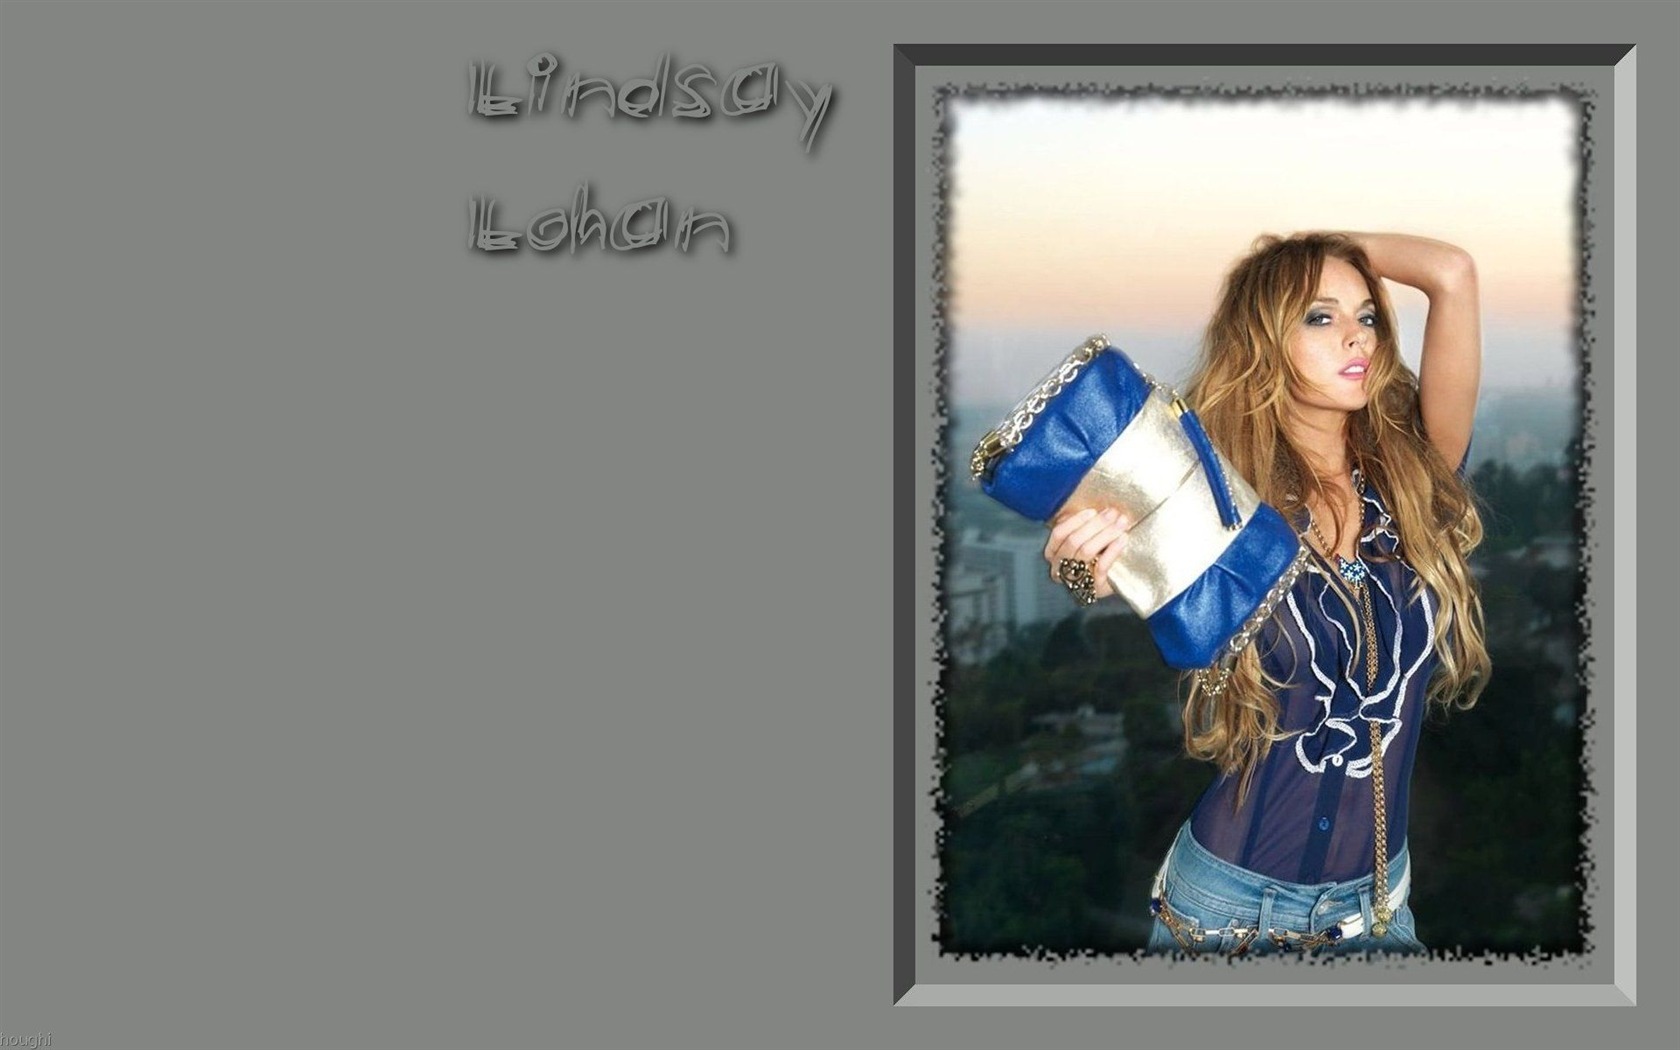 Lindsay Lohan 林賽·羅韓 美女壁紙 #18 - 1680x1050